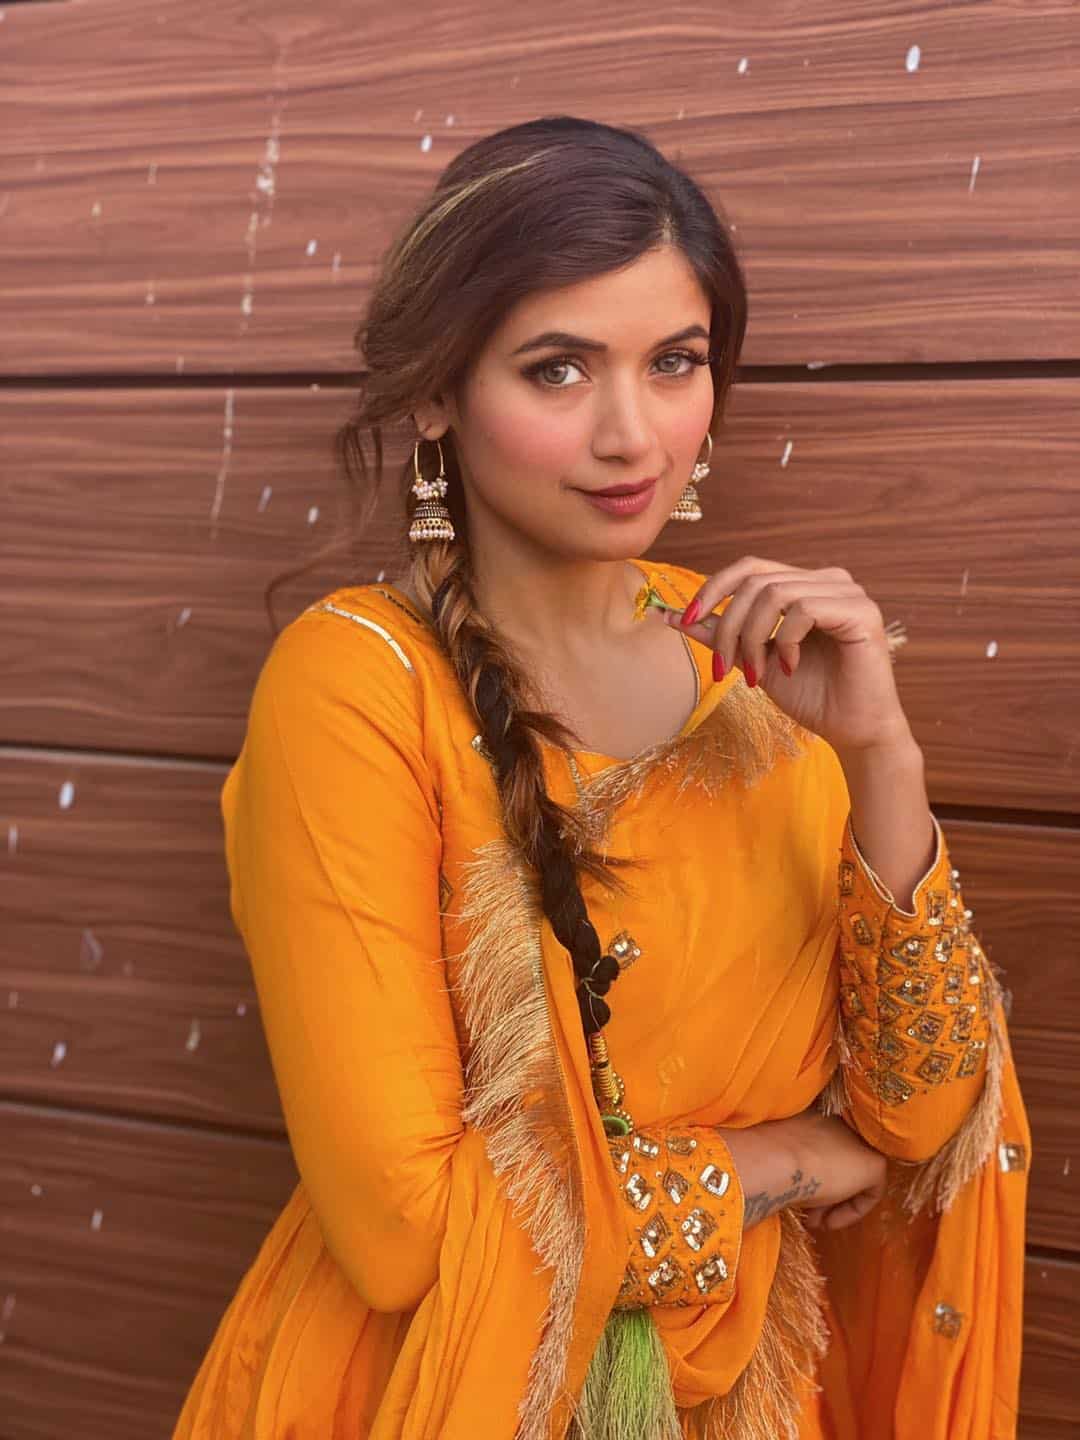 Punjabi Girls Pic for DP